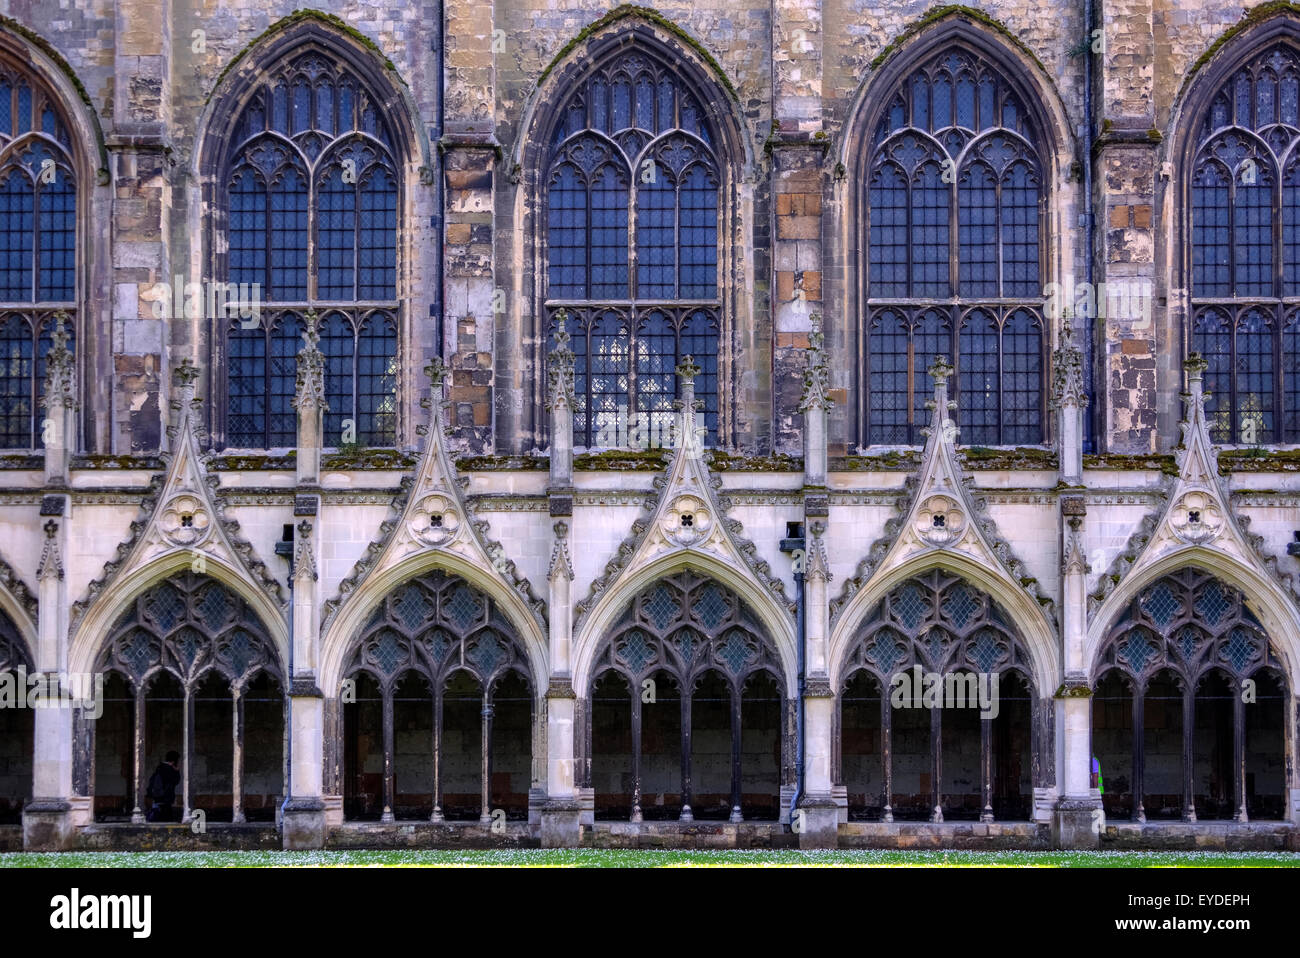 La Cathédrale de Canterbury, Canterbury, Kent, England, United Kingdom Banque D'Images